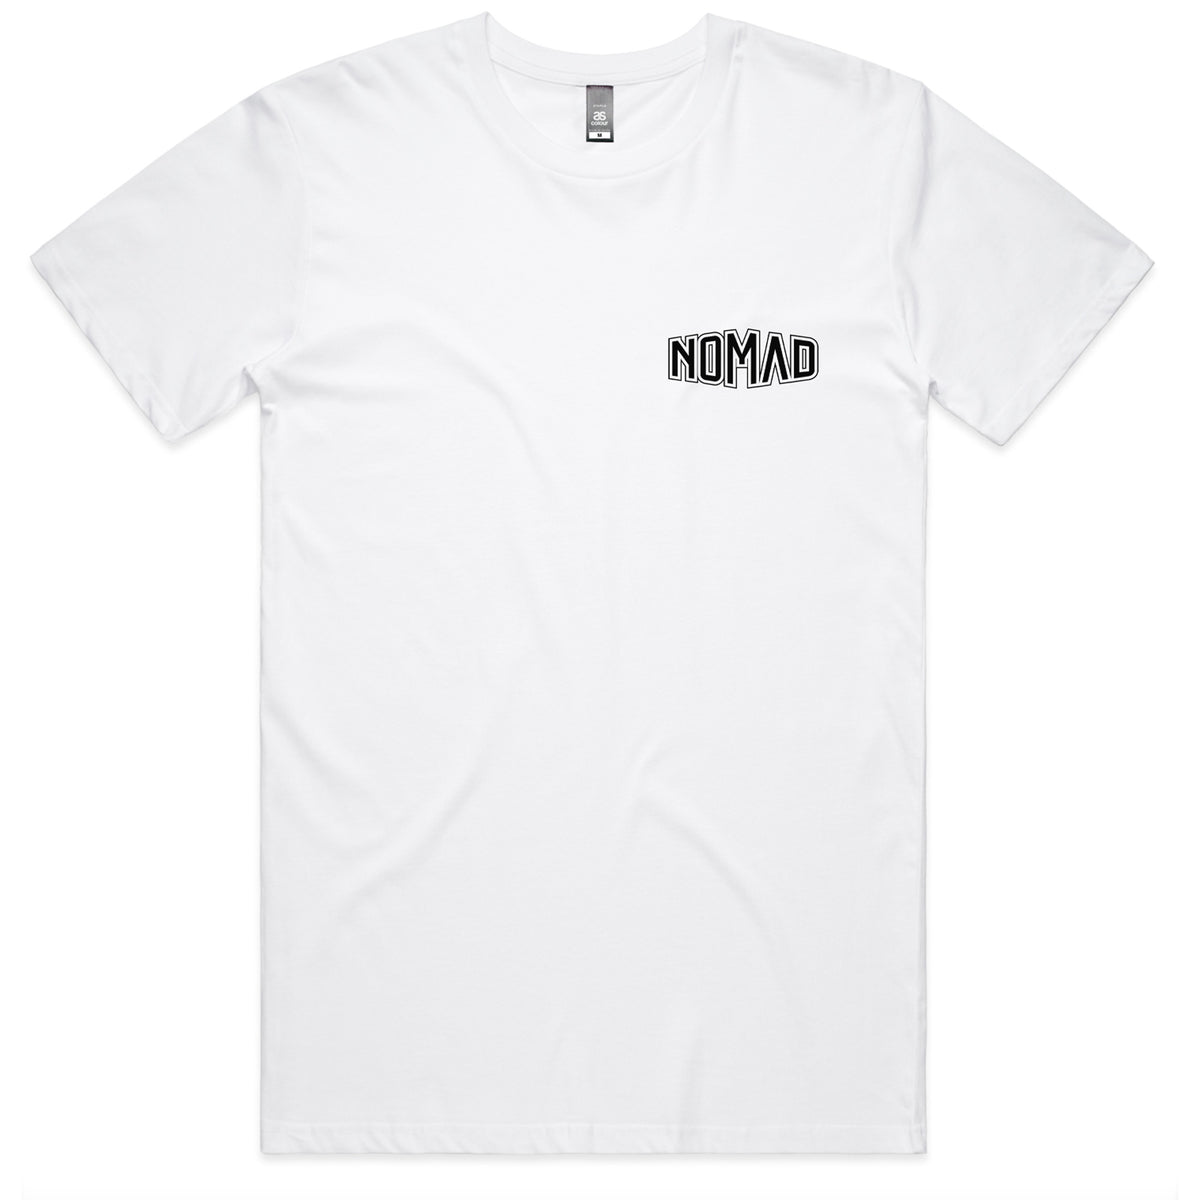 Nomad Lackey T-Shirt - White